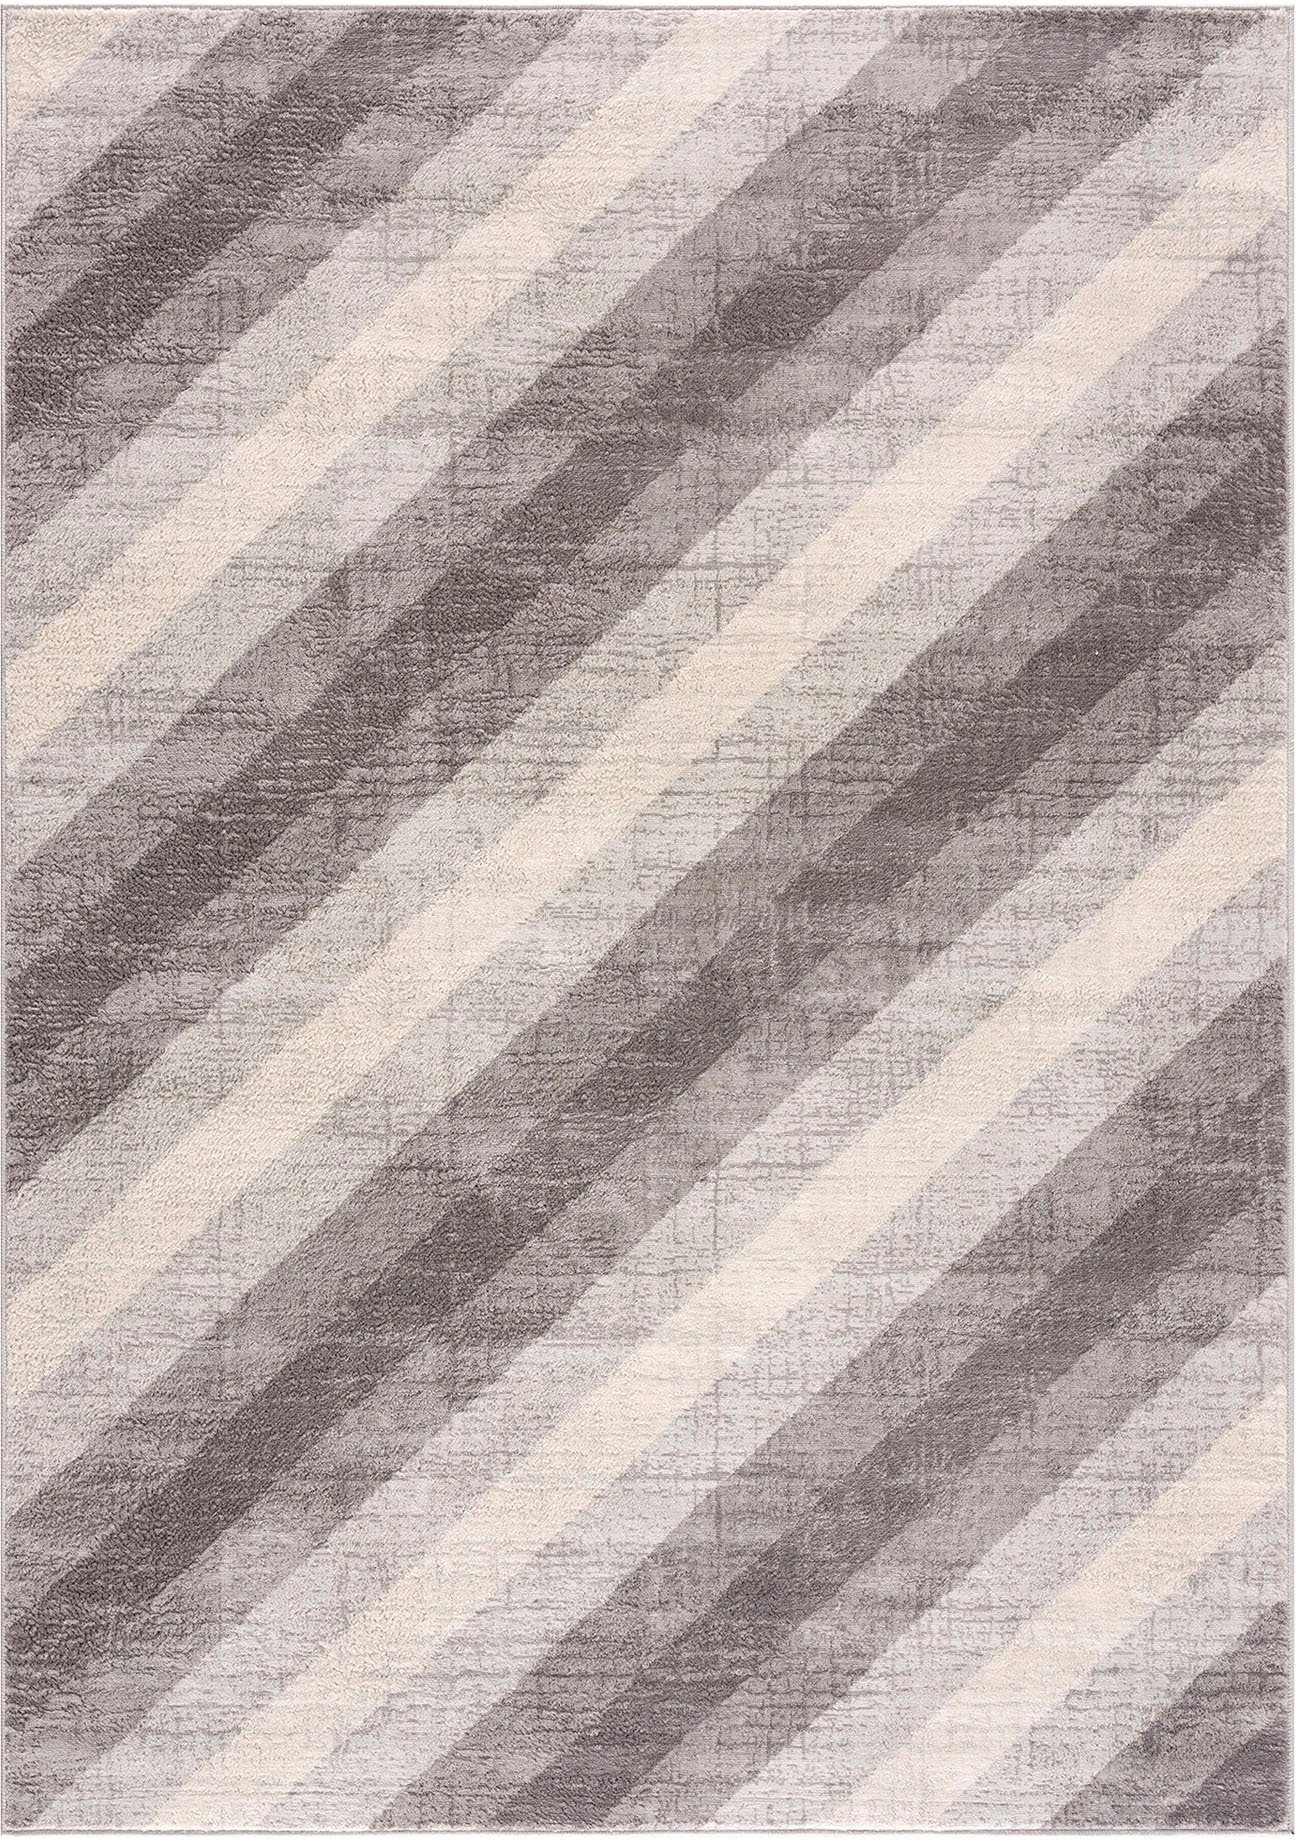 SEHRAZAT Vloerkleed- modern laagpolig vloerkleed, tapijtenloods Montana, grijs geodriehoek patroon, 120x170 cm